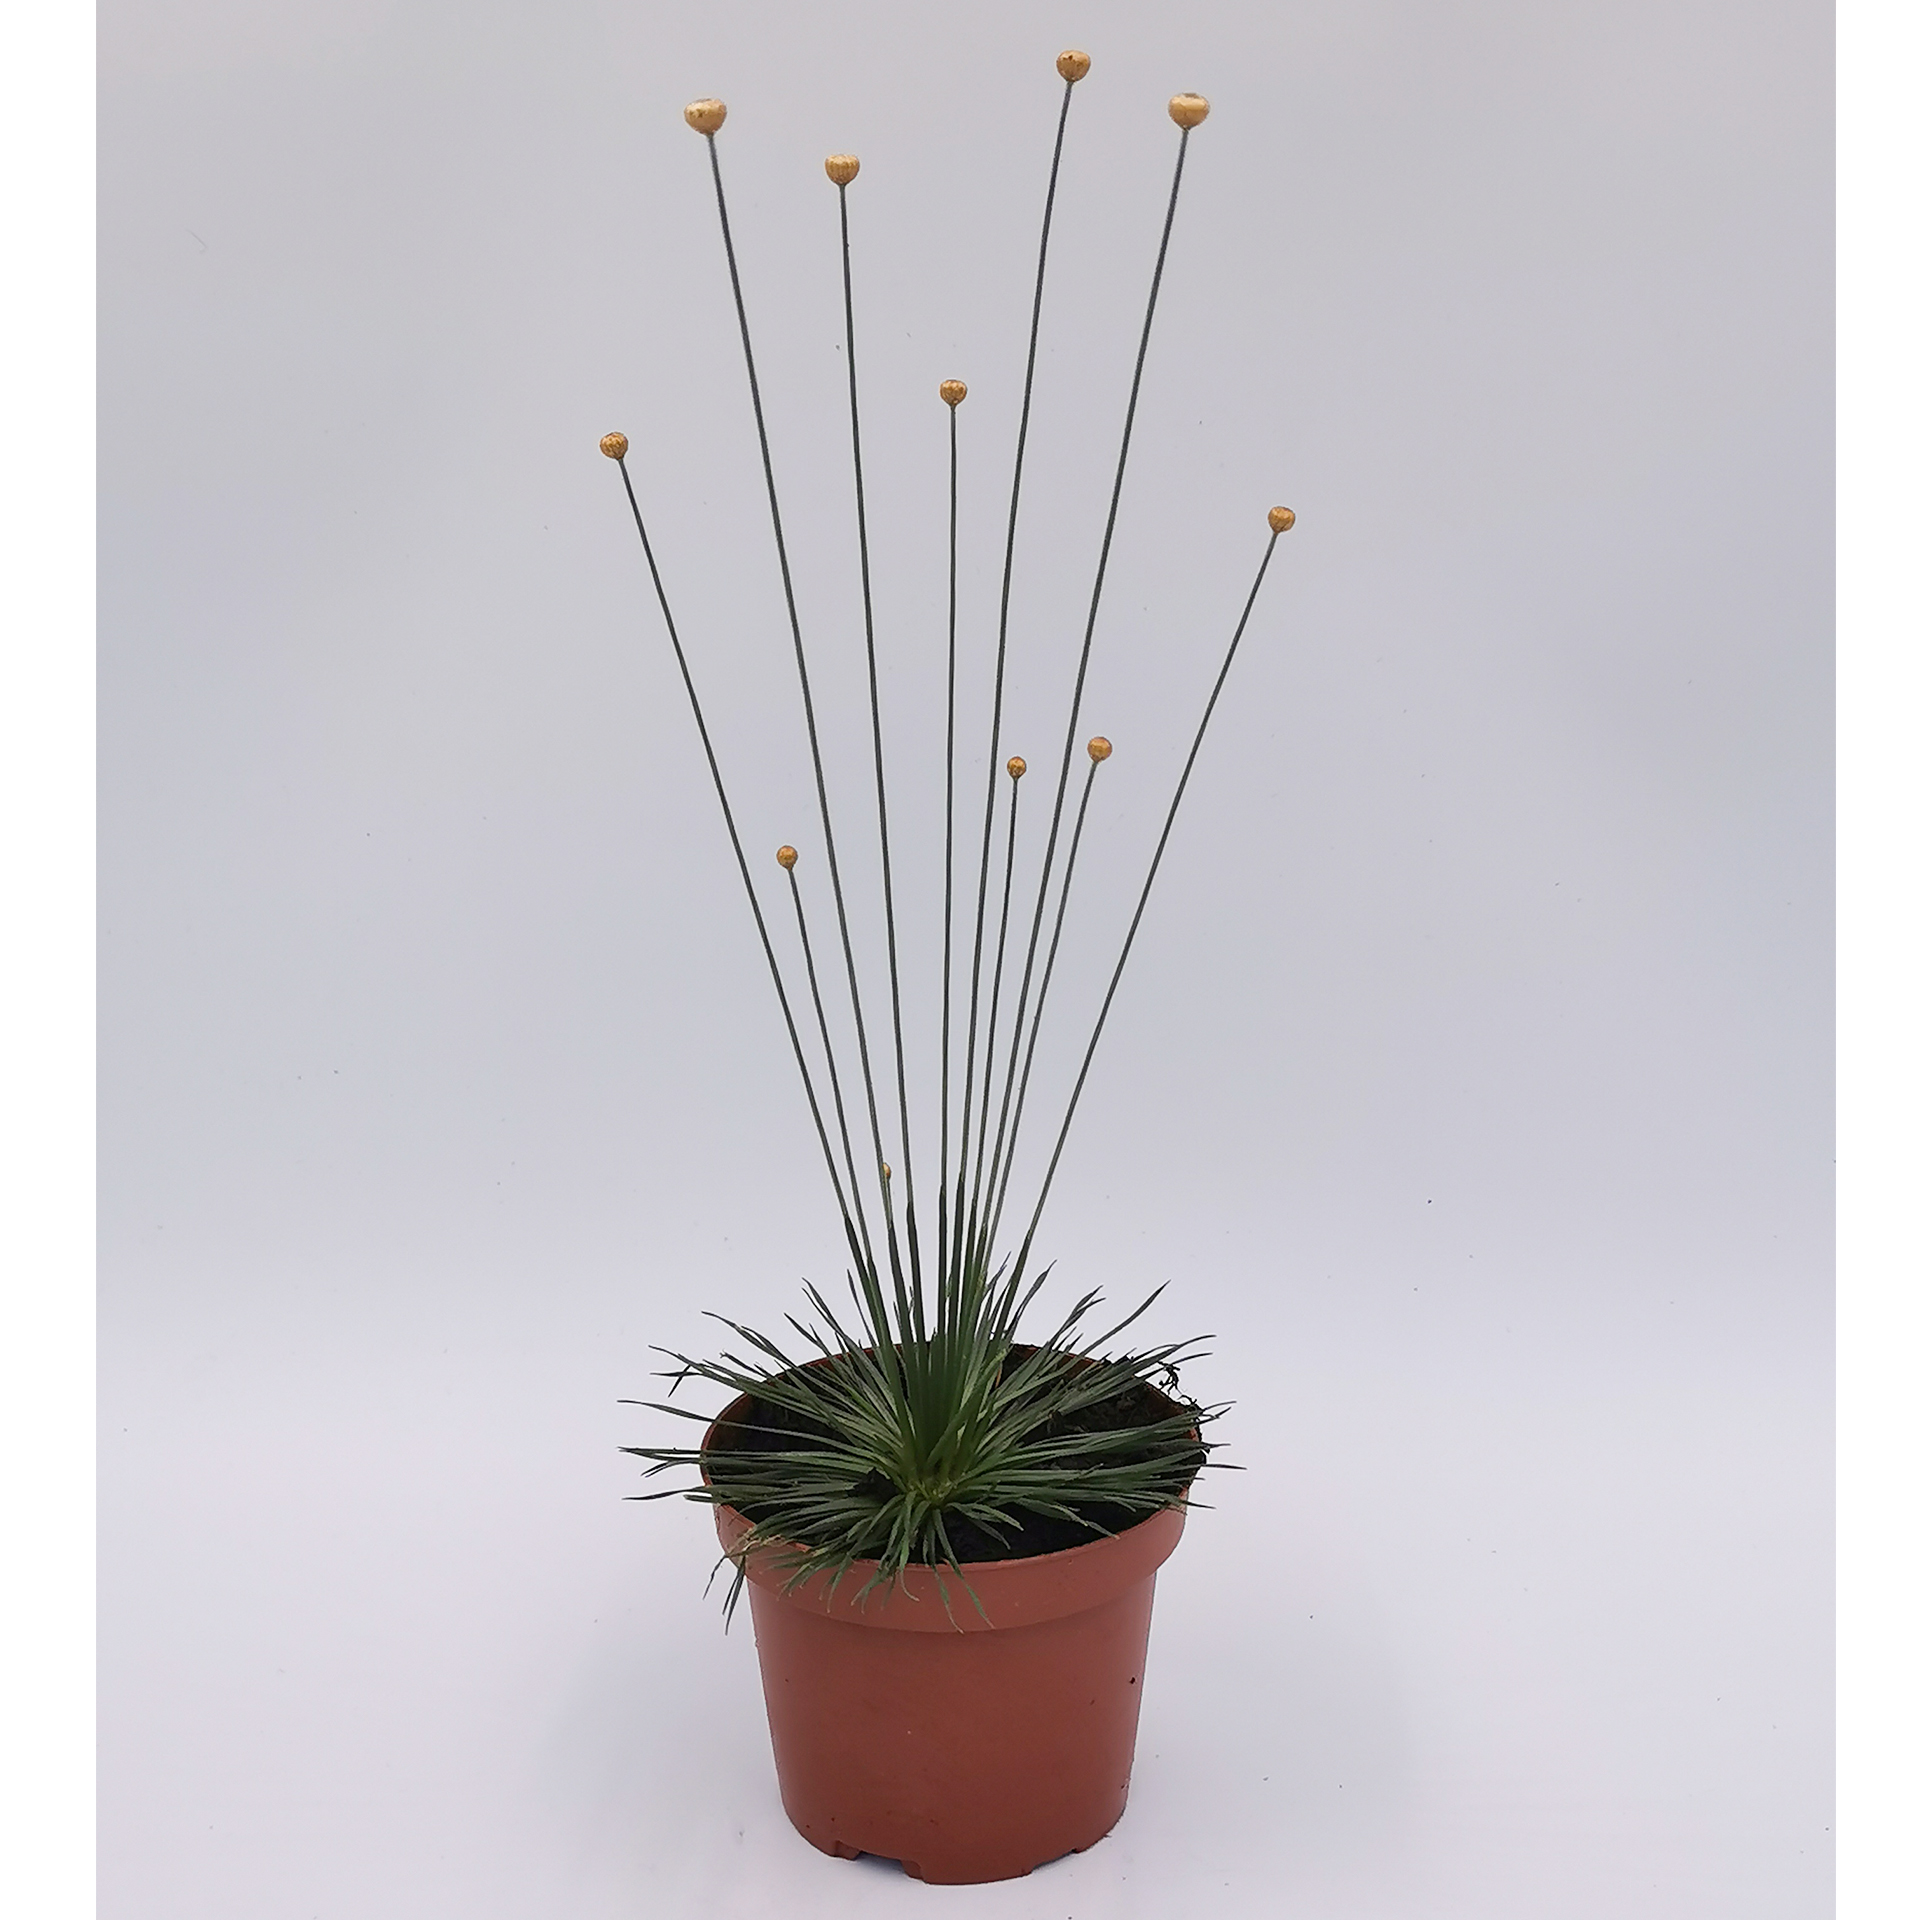 Mikadopflanze - Syngonanthus chrysanthus 'Mikado', 9cm Topf